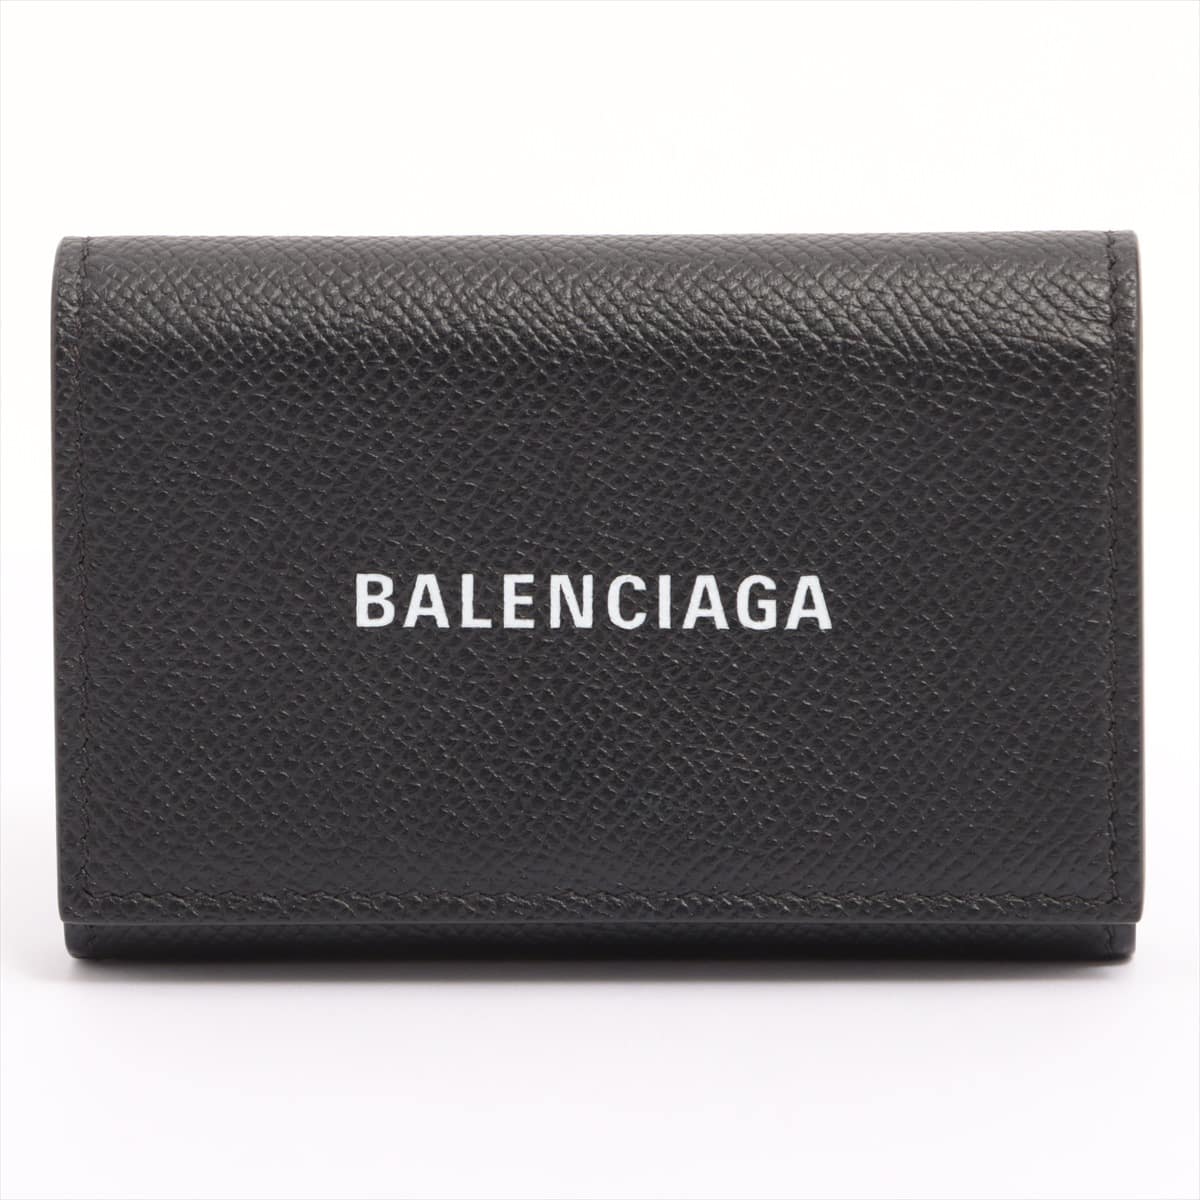 Balenciaga Everyday 594313 Leather Coin case Black